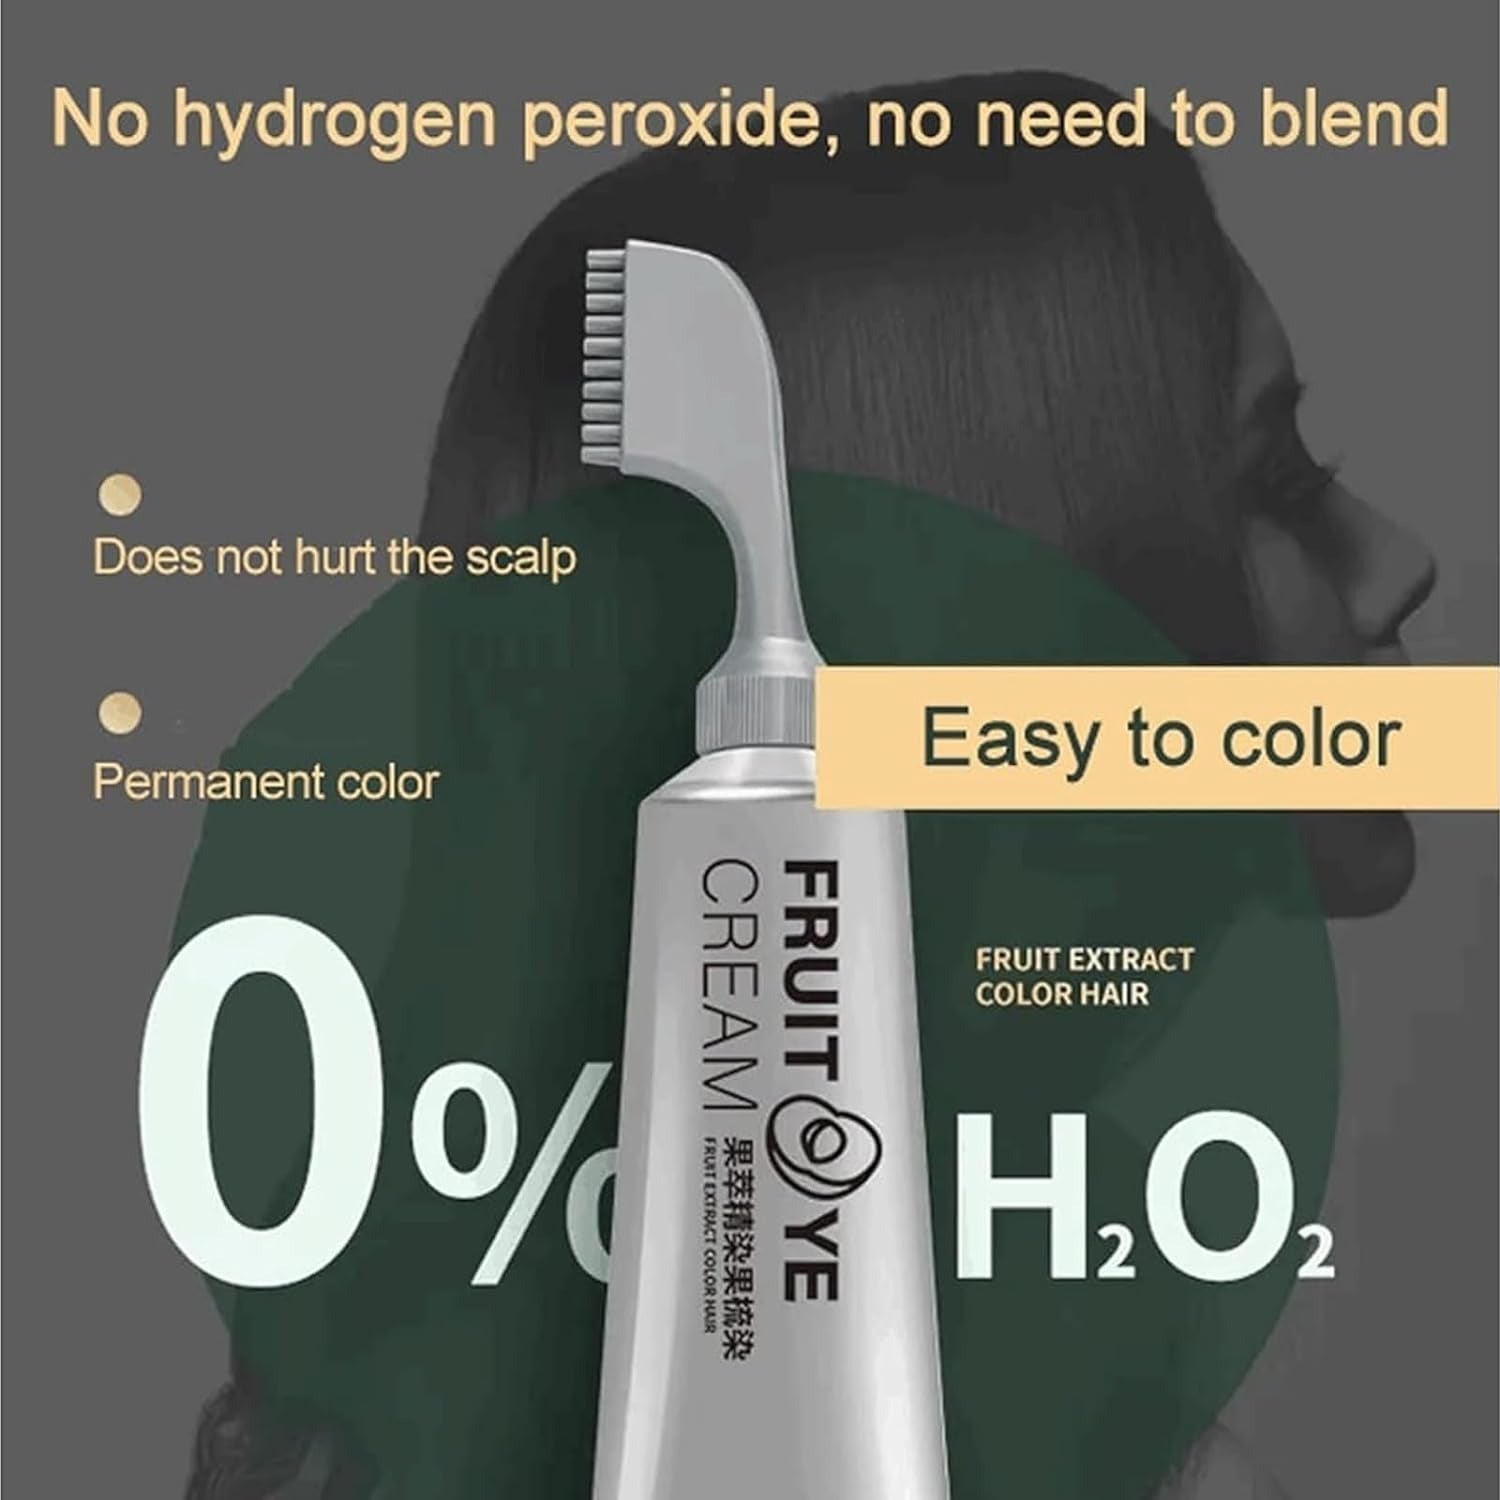 NaturalDye™ - 80 ml Haarfärbecreme mit reinen Pflanzenextrakten | 50% RABATT